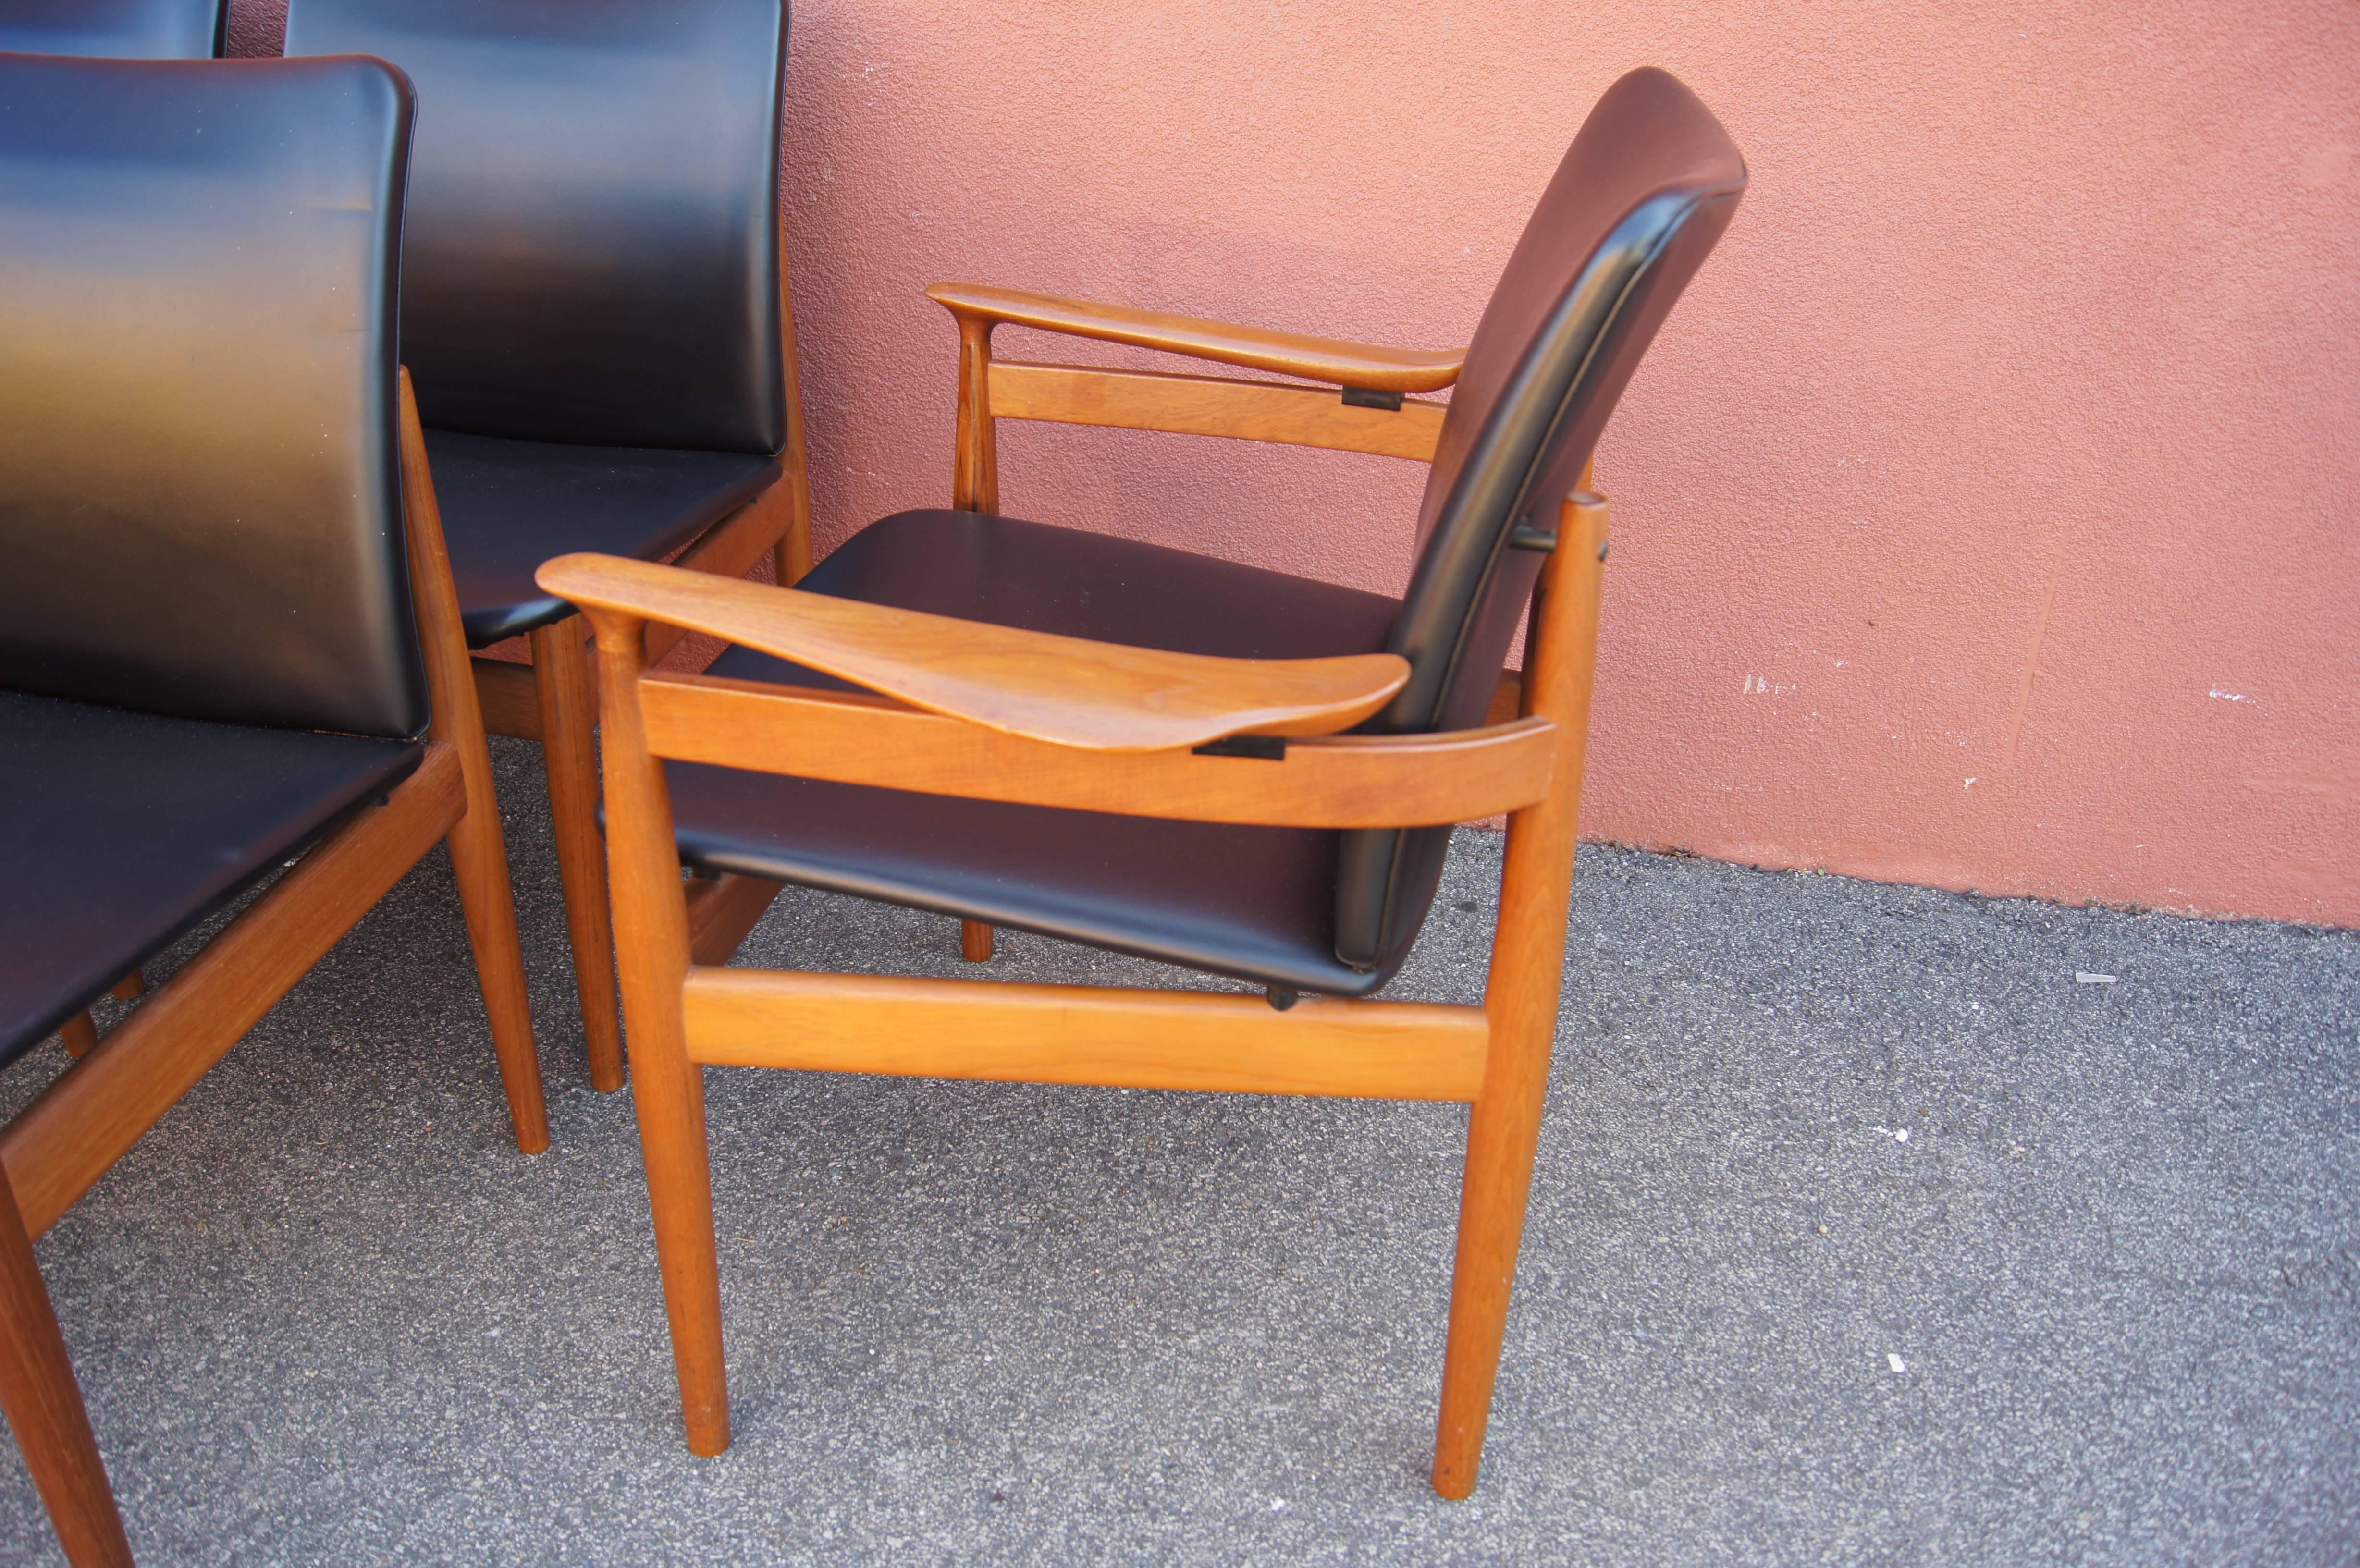 Conçu par Finn Juhl pour France & Son et importé par John Stuart, ce bel ensemble de six chaises de salle à manger présente des sièges généreux qui flottent dans des cadres en teck. Ils sont recouverts de similicuir noir.

Les dimensions ci-dessous